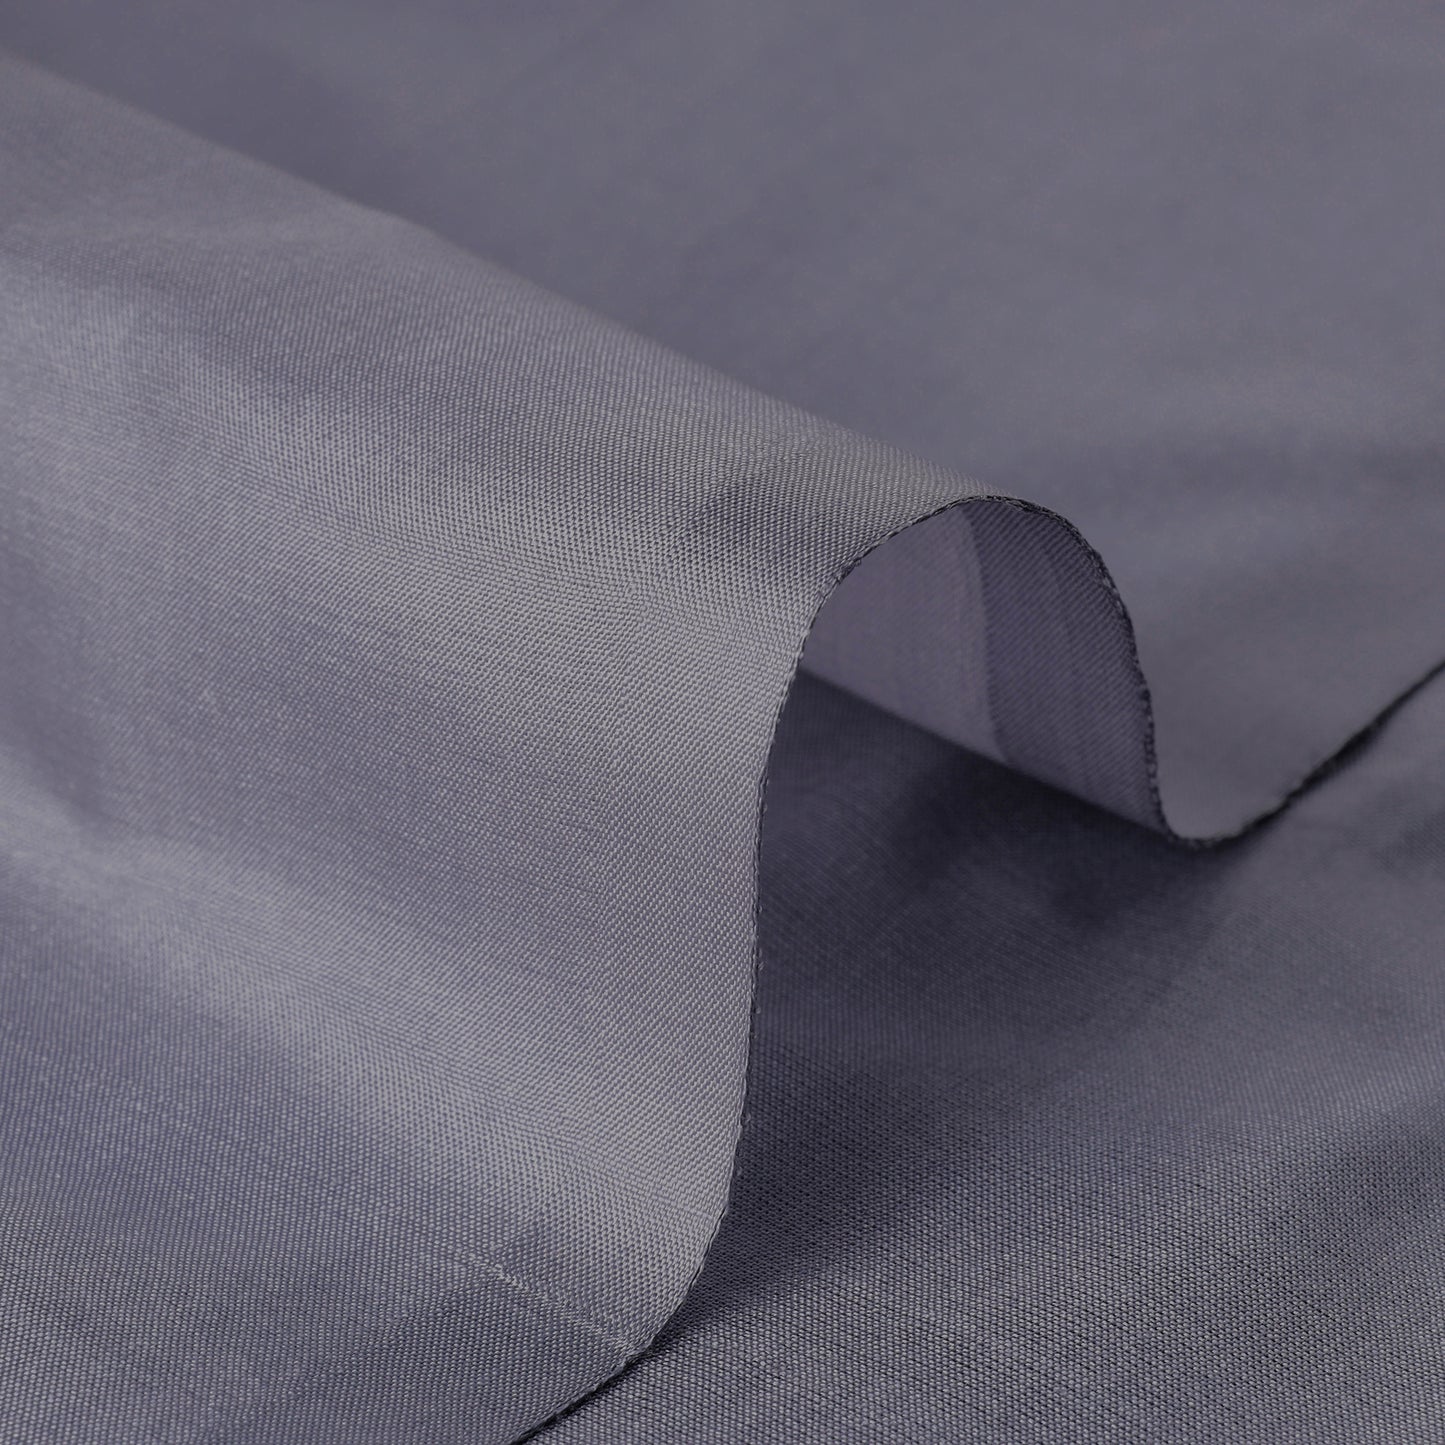 Grey Prewashed Plain Pure Silk Fabric